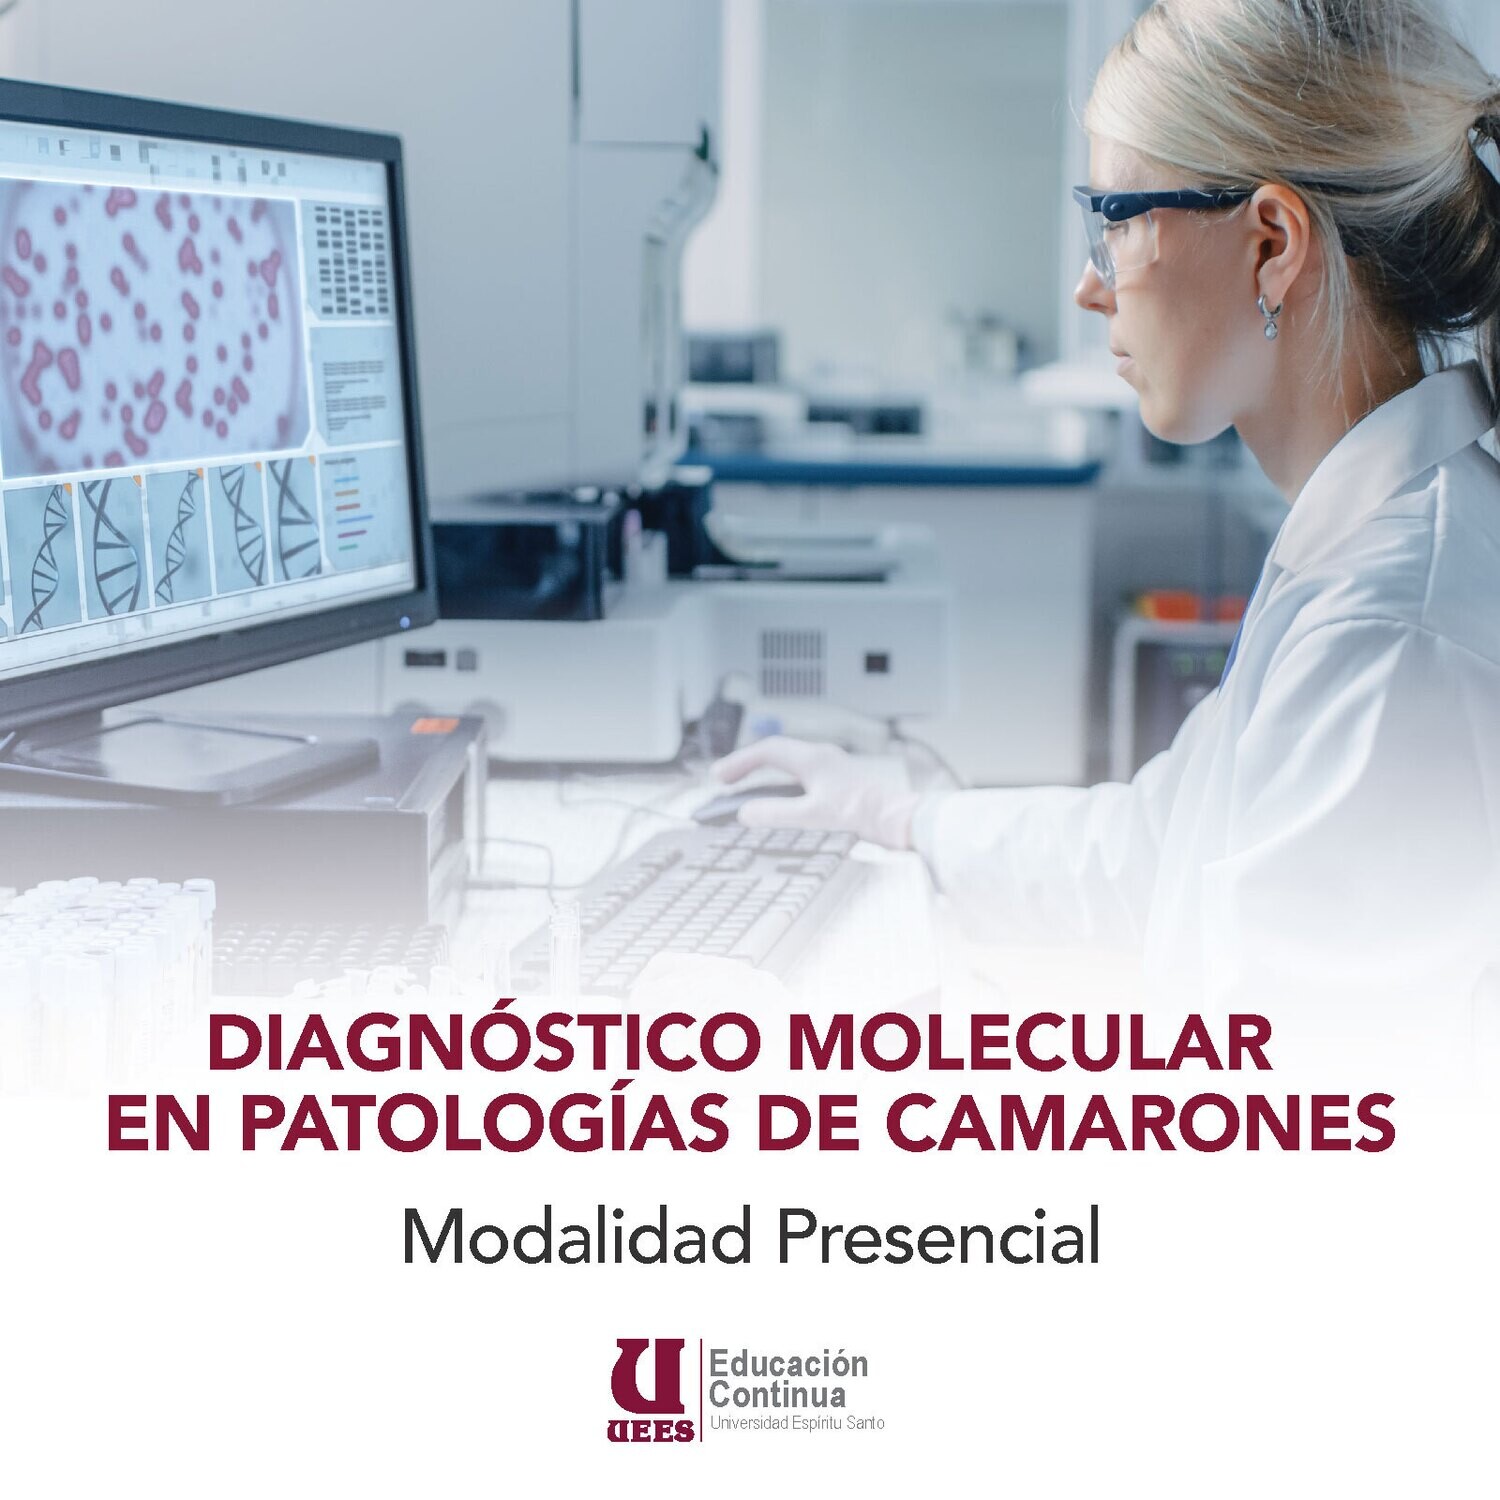 Diagnóstico Molecular en Patología de Camarones